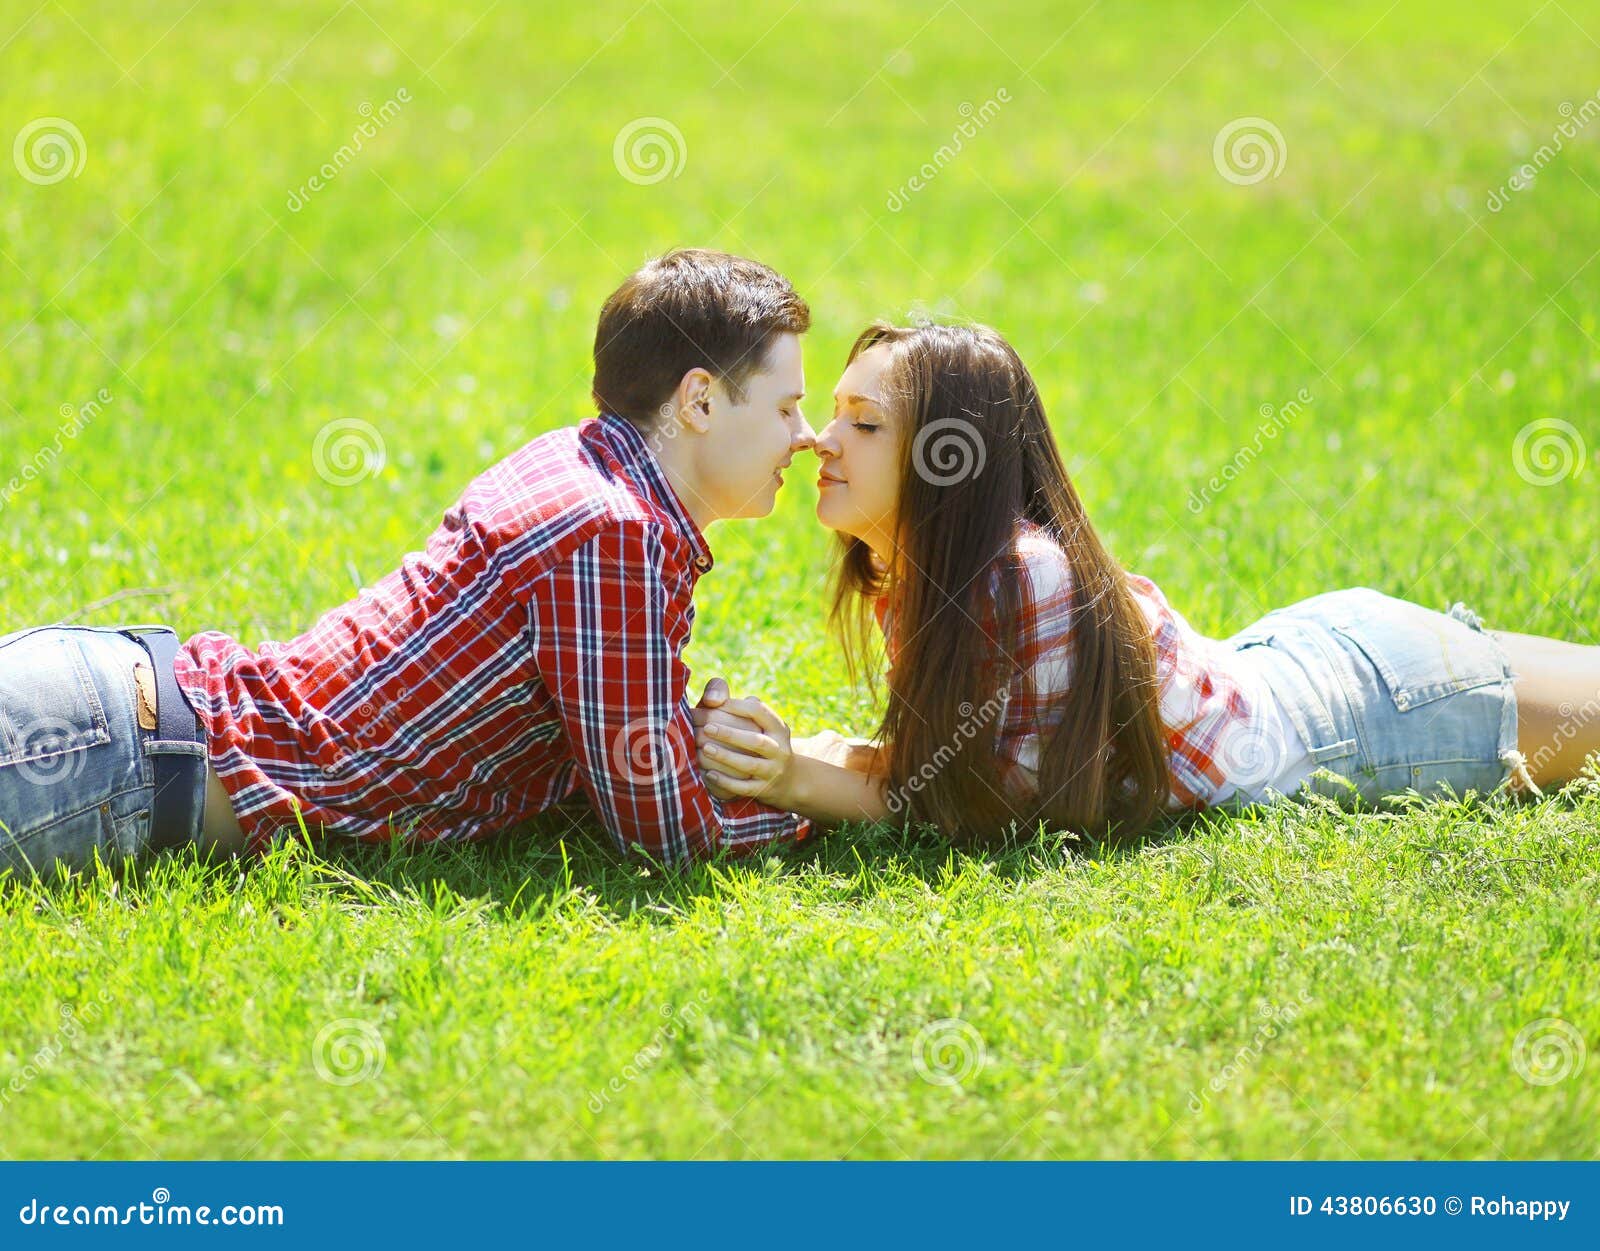 Feeling cute. Влюбленные на траве. Пара сидит на траве. Пара влюбленных на траве. Пара в парке на траве.